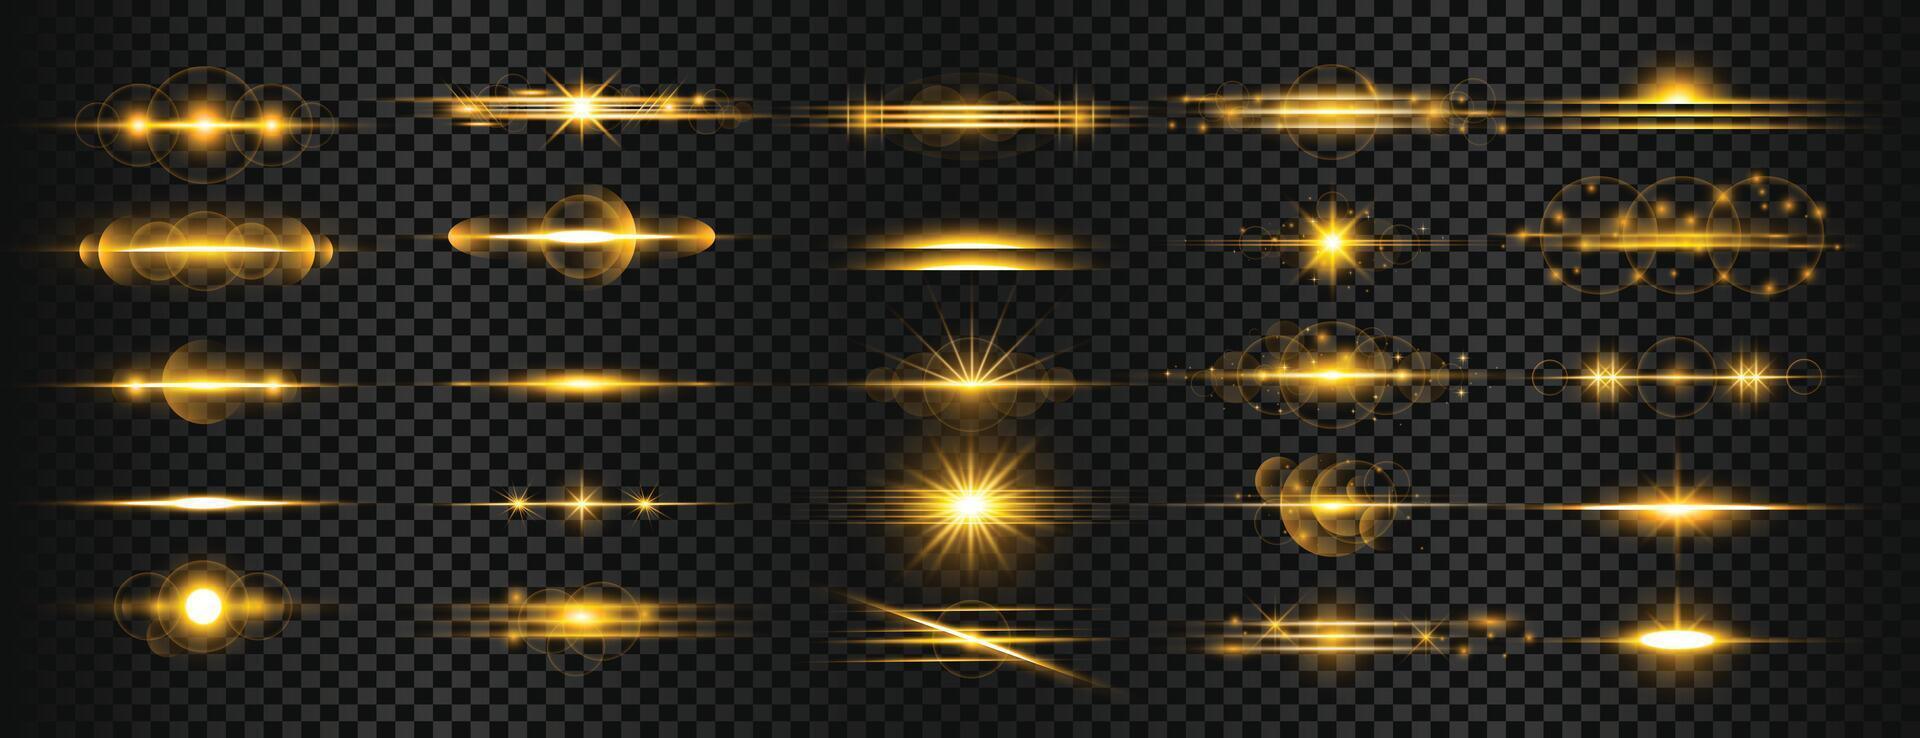 conjunto do dourado transparente luz lente chamas listras vetor